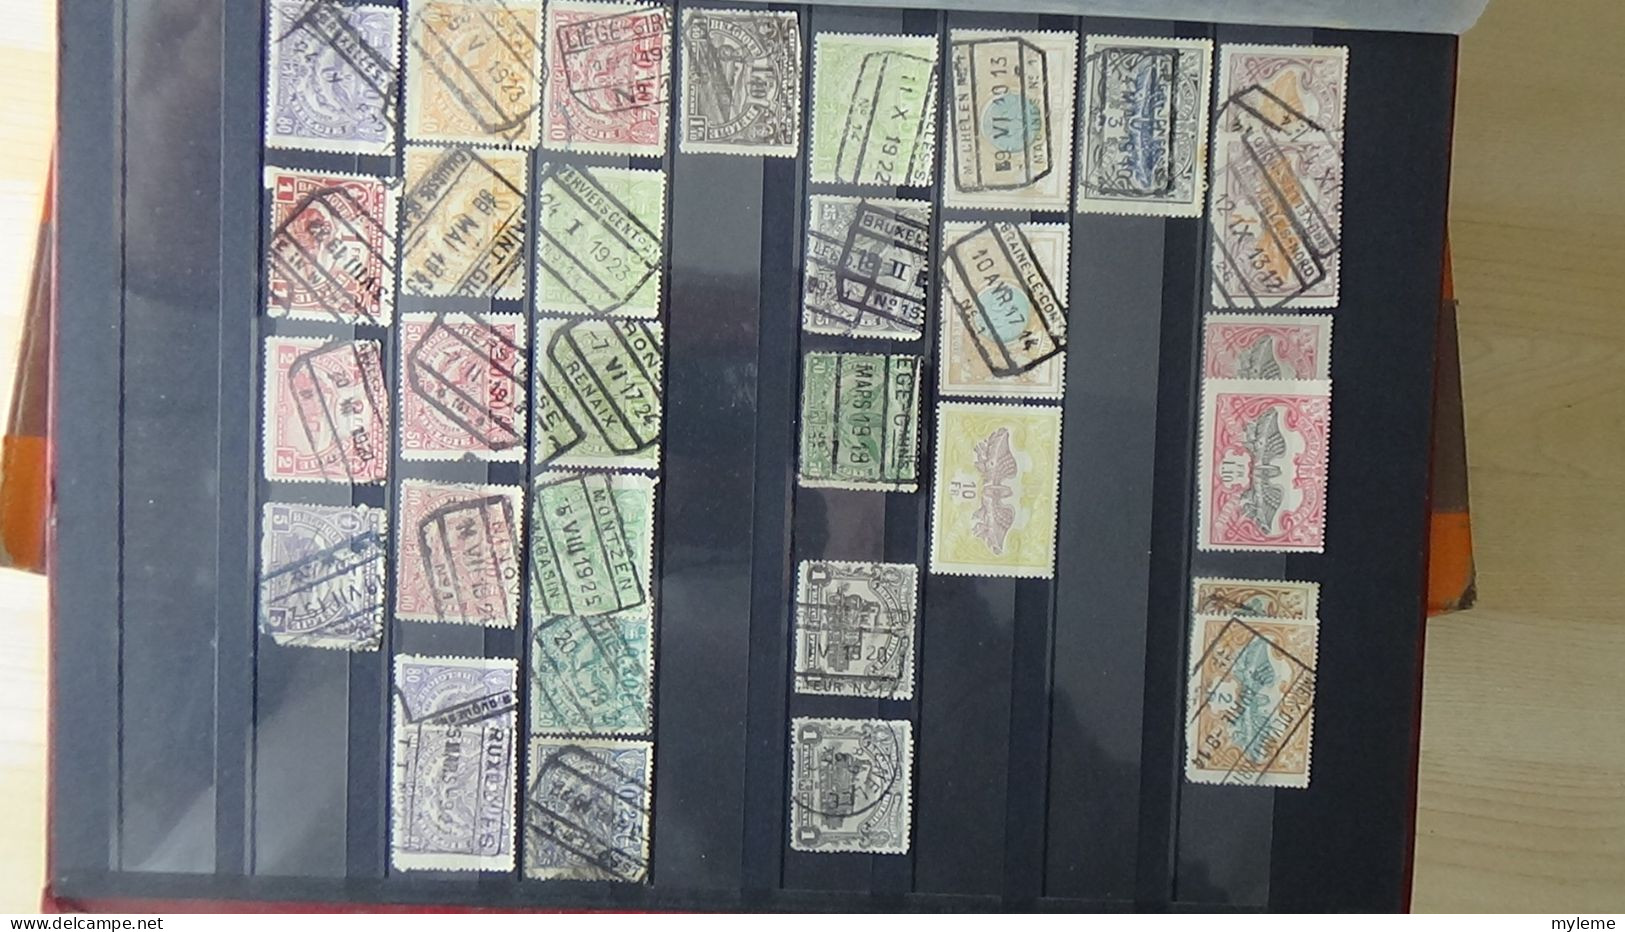 BF46 Bel ensemble de timbres de divers pays dont N° 154 ** (1 adhérence) voir scan. Cote 1900 euros